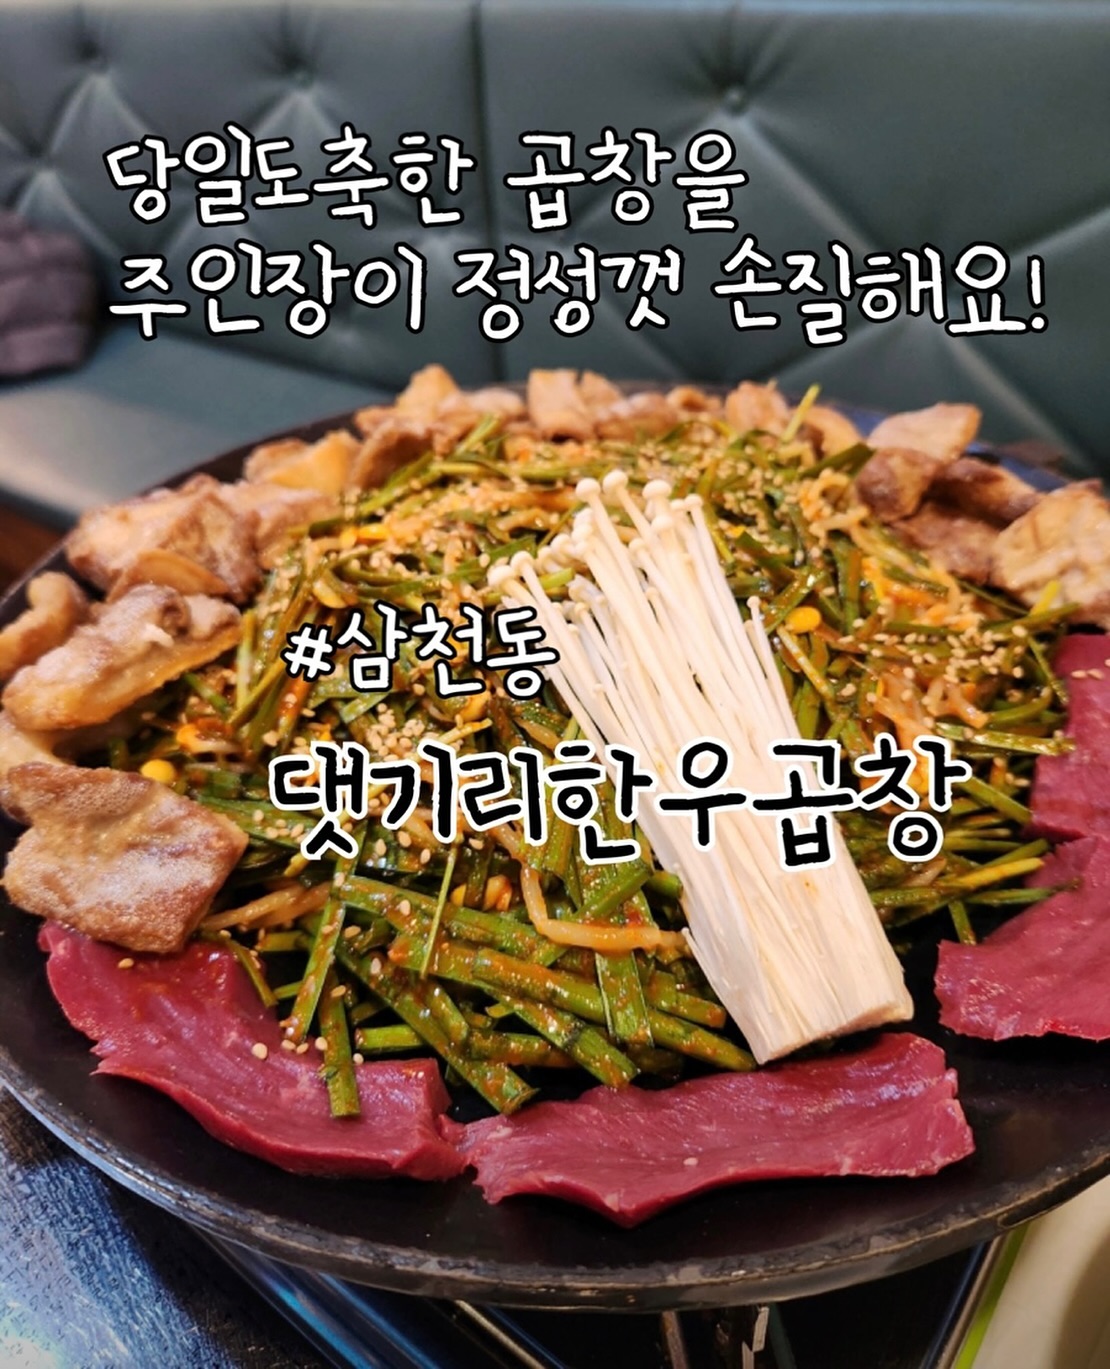 완산구 맛집] 쯔양이 극찬한 한우 곱창,댓기리 한우곱창